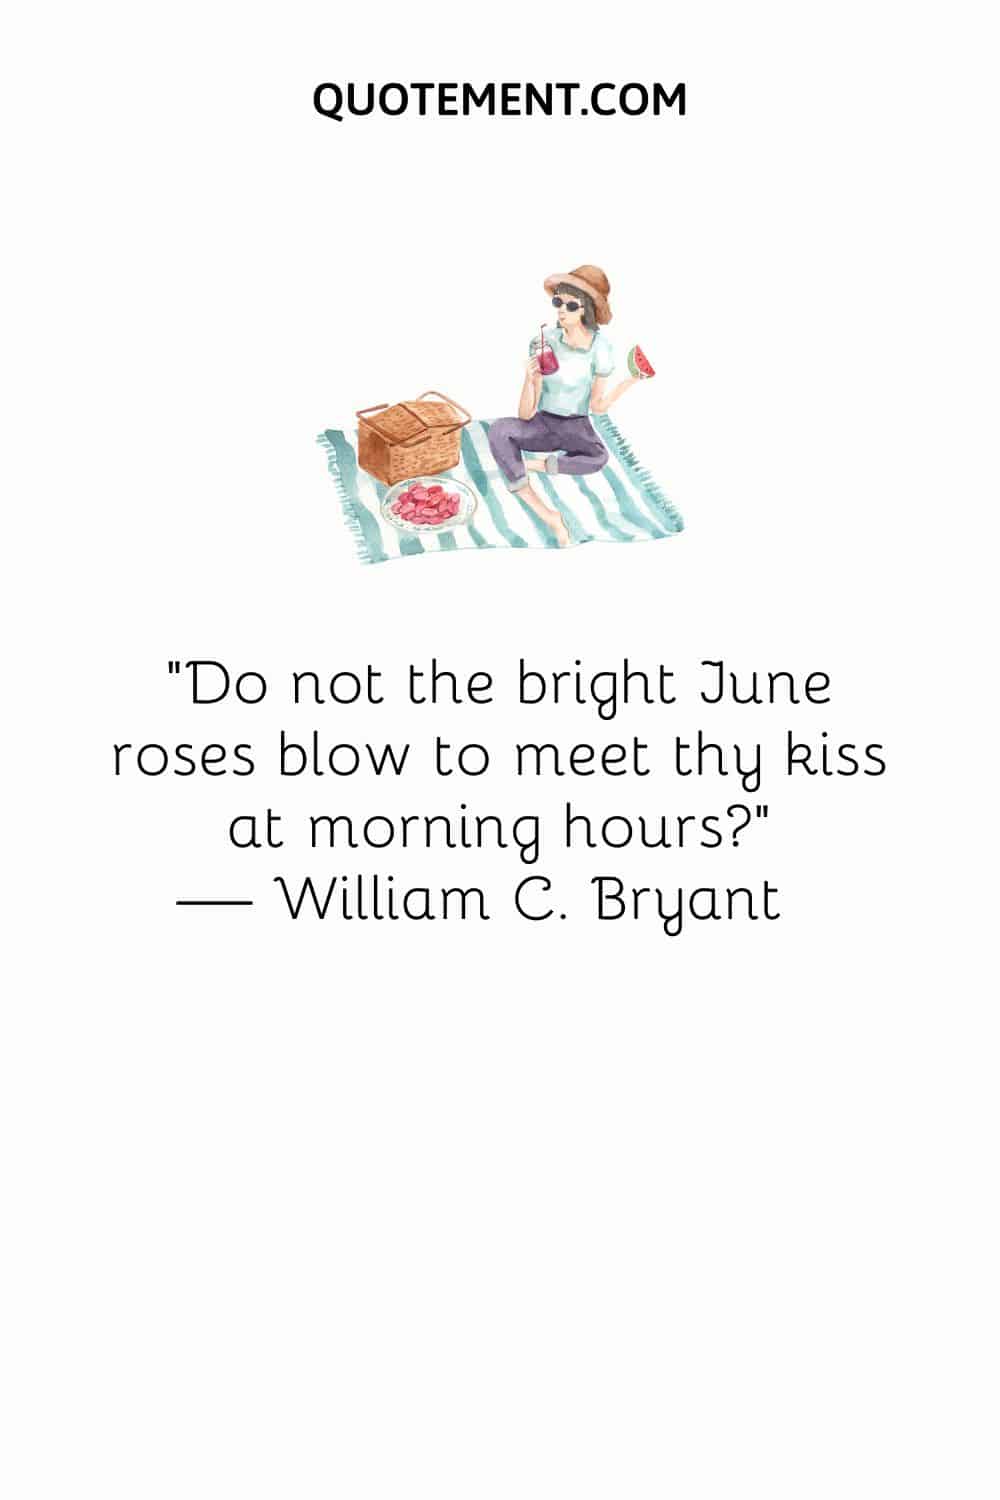 "¿No soplan las brillantes rosas de junio al encuentro de tu beso en las horas de la mañana?" - William C. Bryant